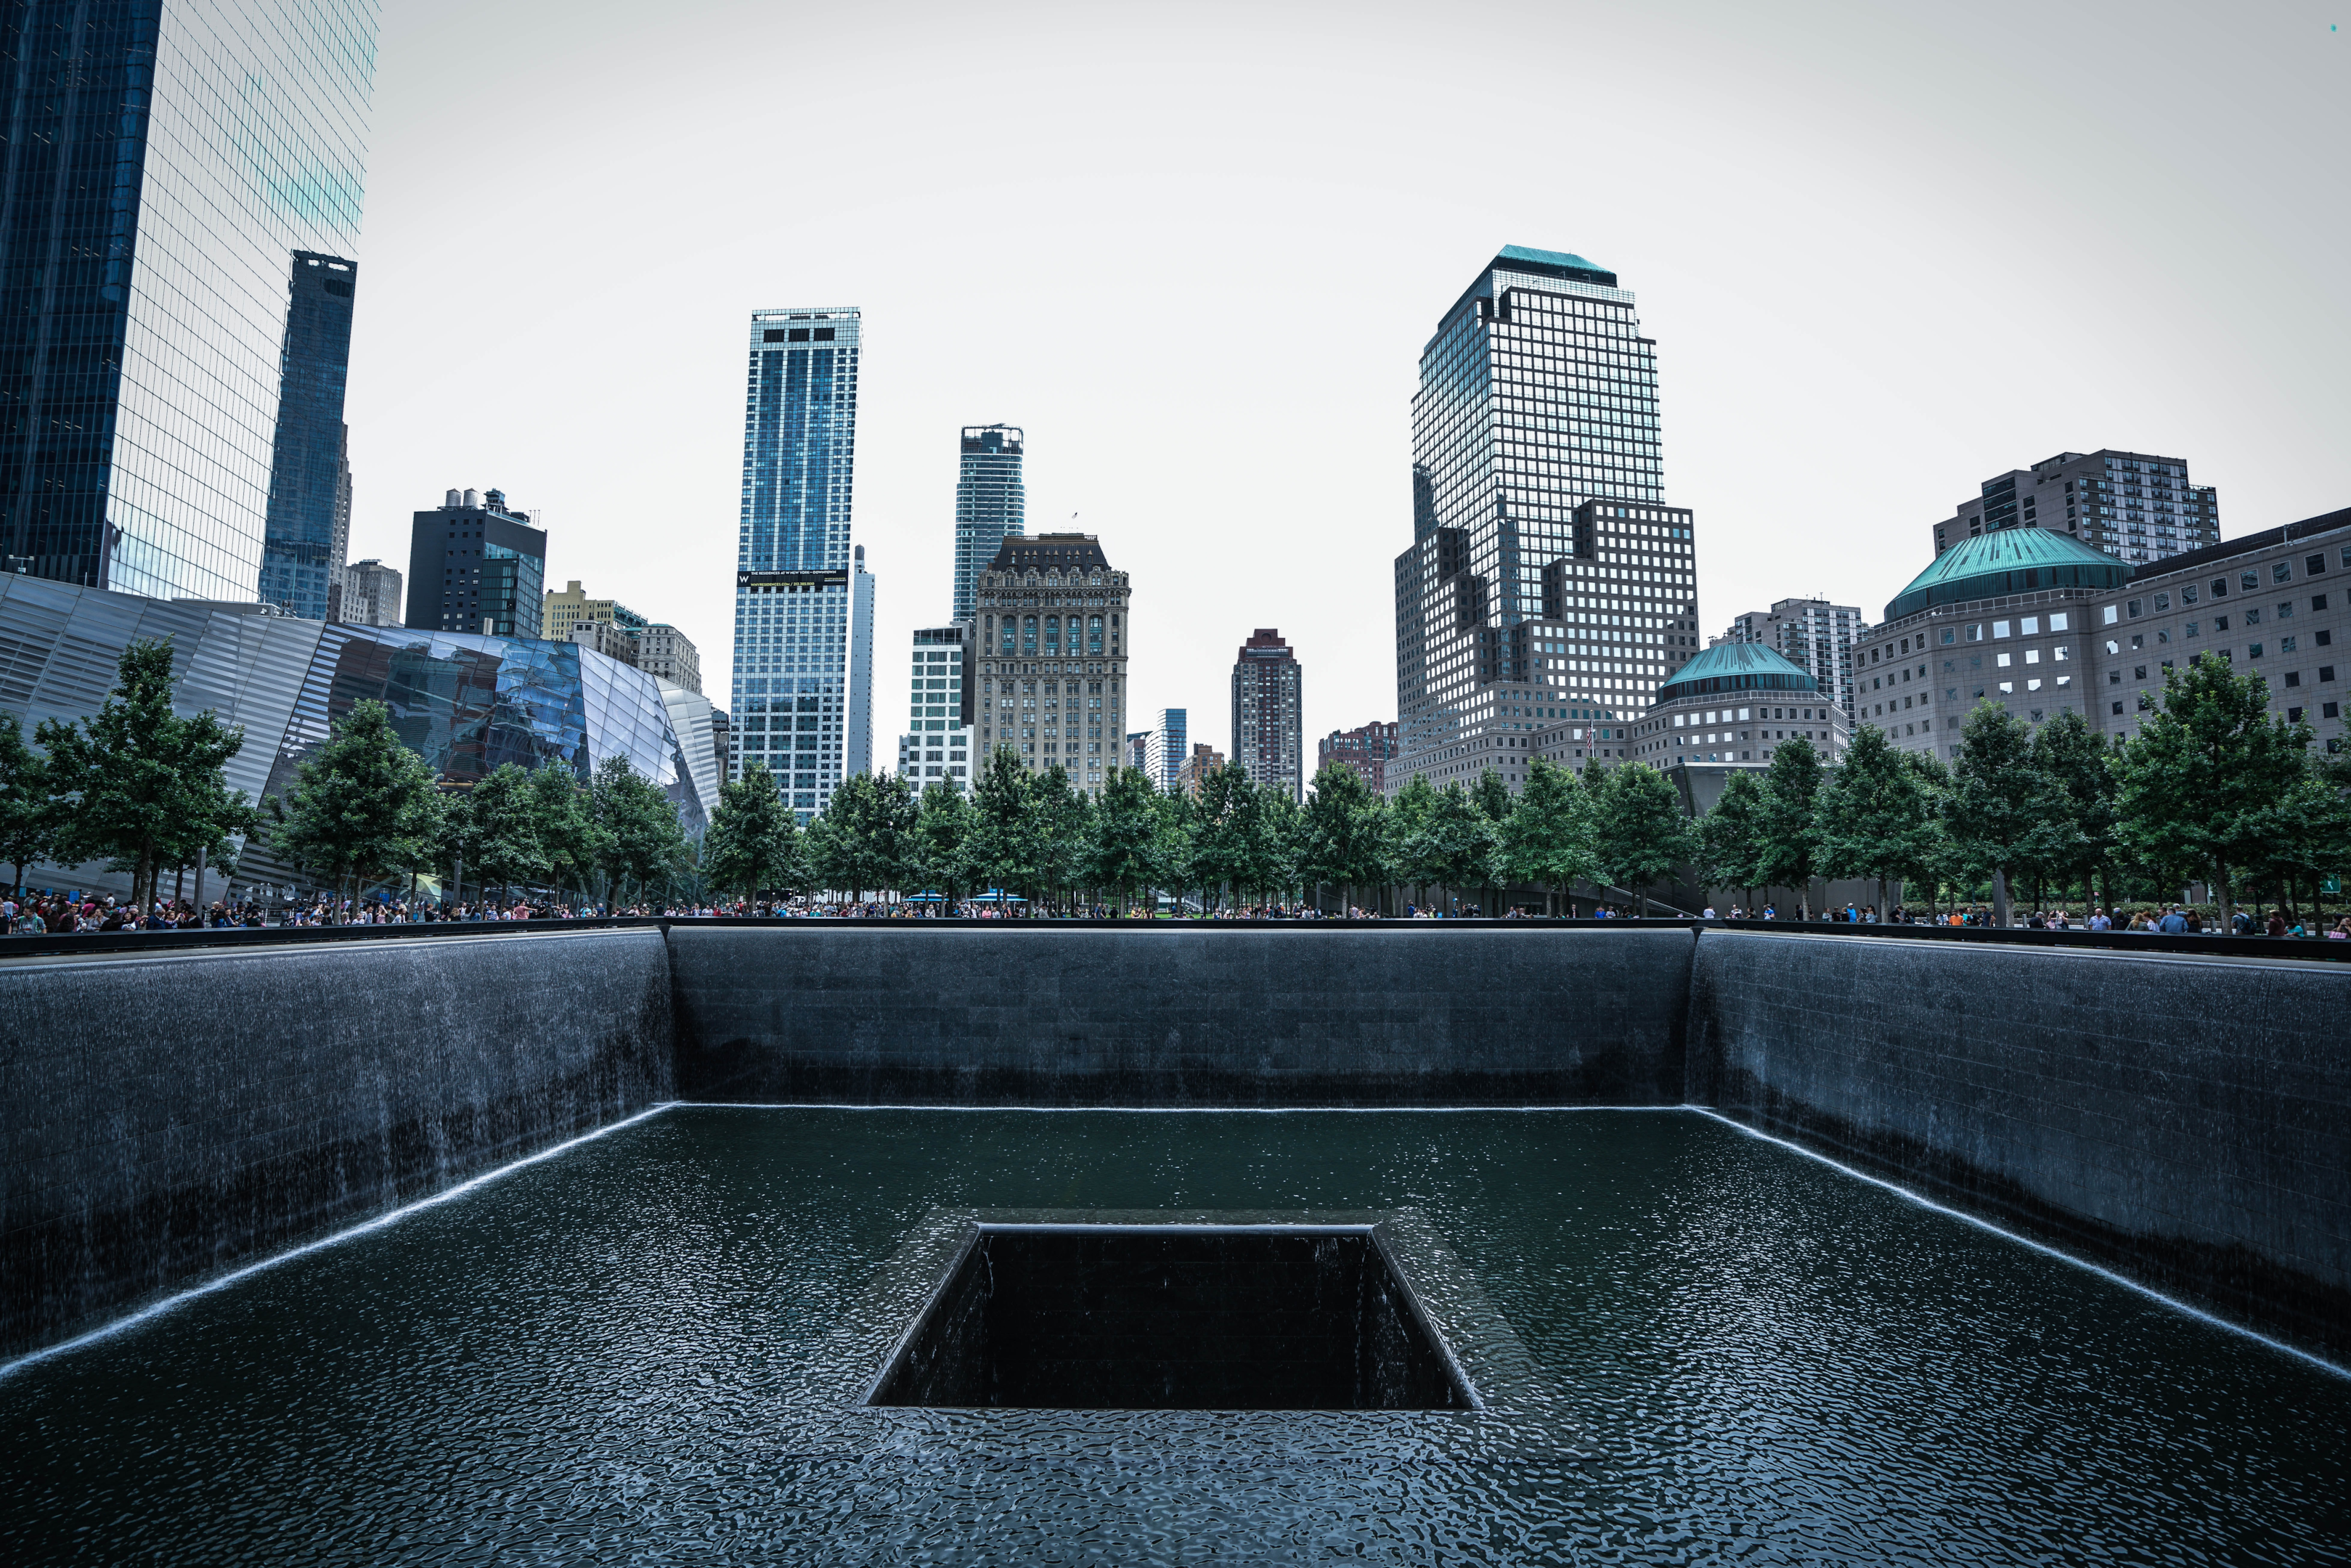 9/11 Memorial & Museum in New York City